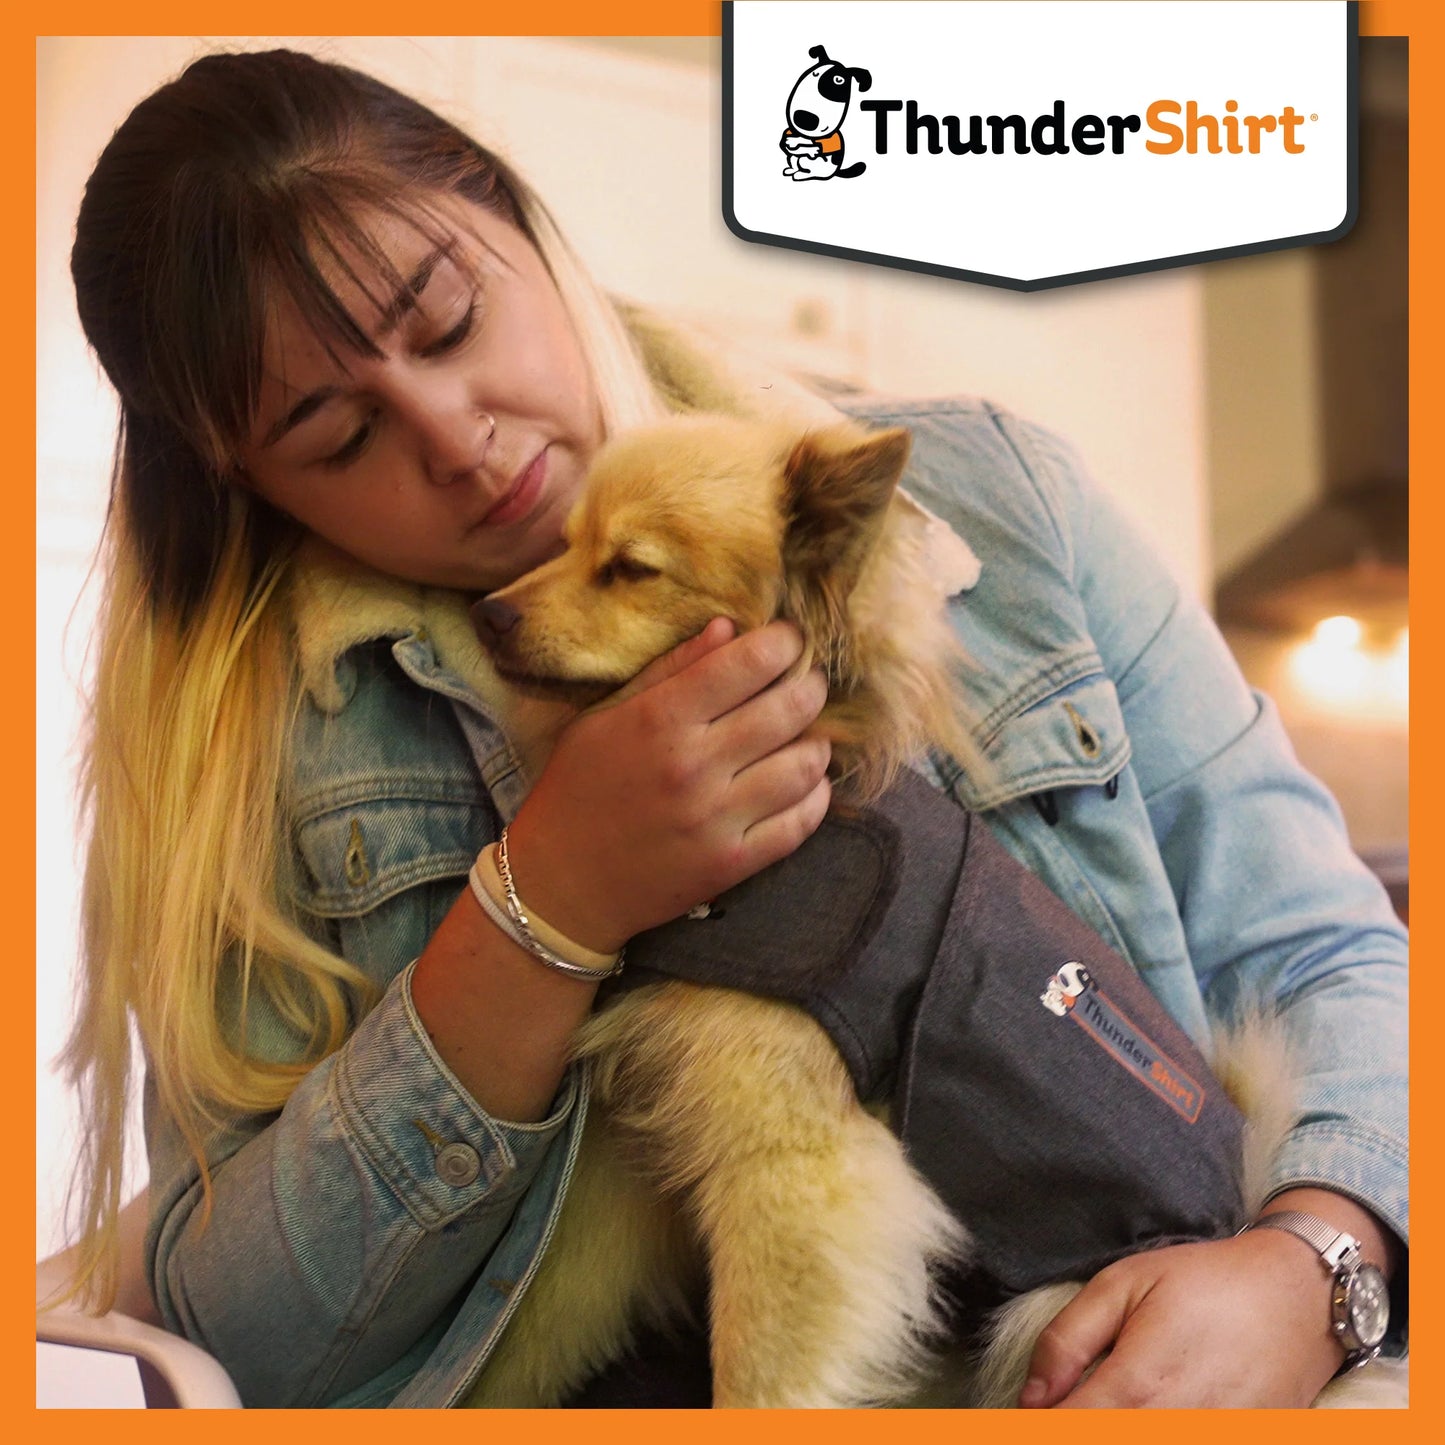 ThunderShirt - Chaleco que ayuda a disminuir el estrés y ansiedad